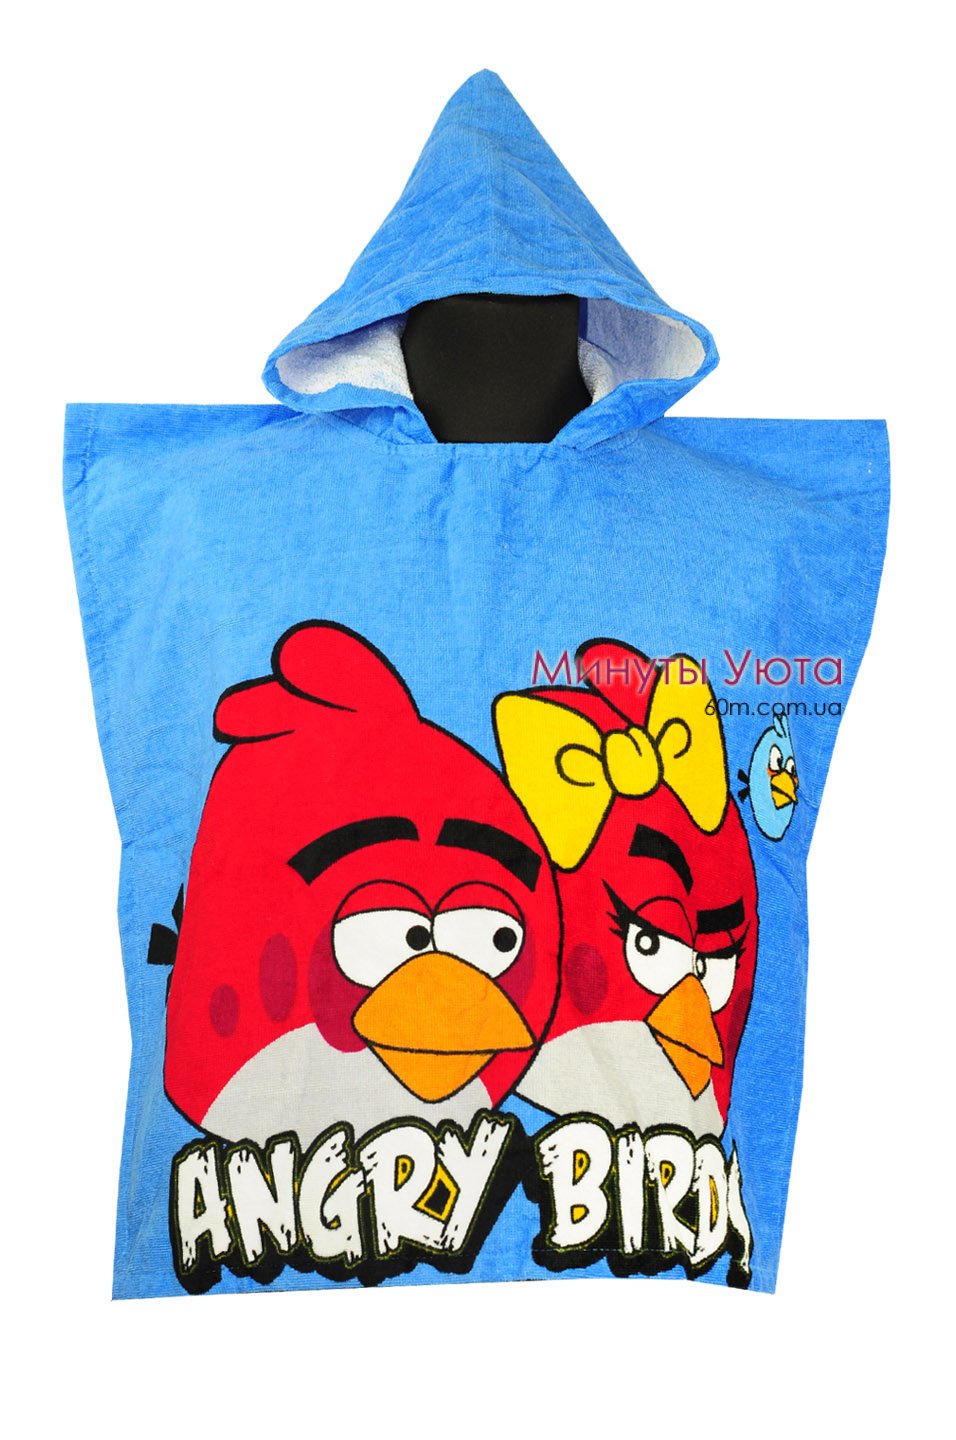 Пляжное полотенце-пончо Angry Birds Turkey